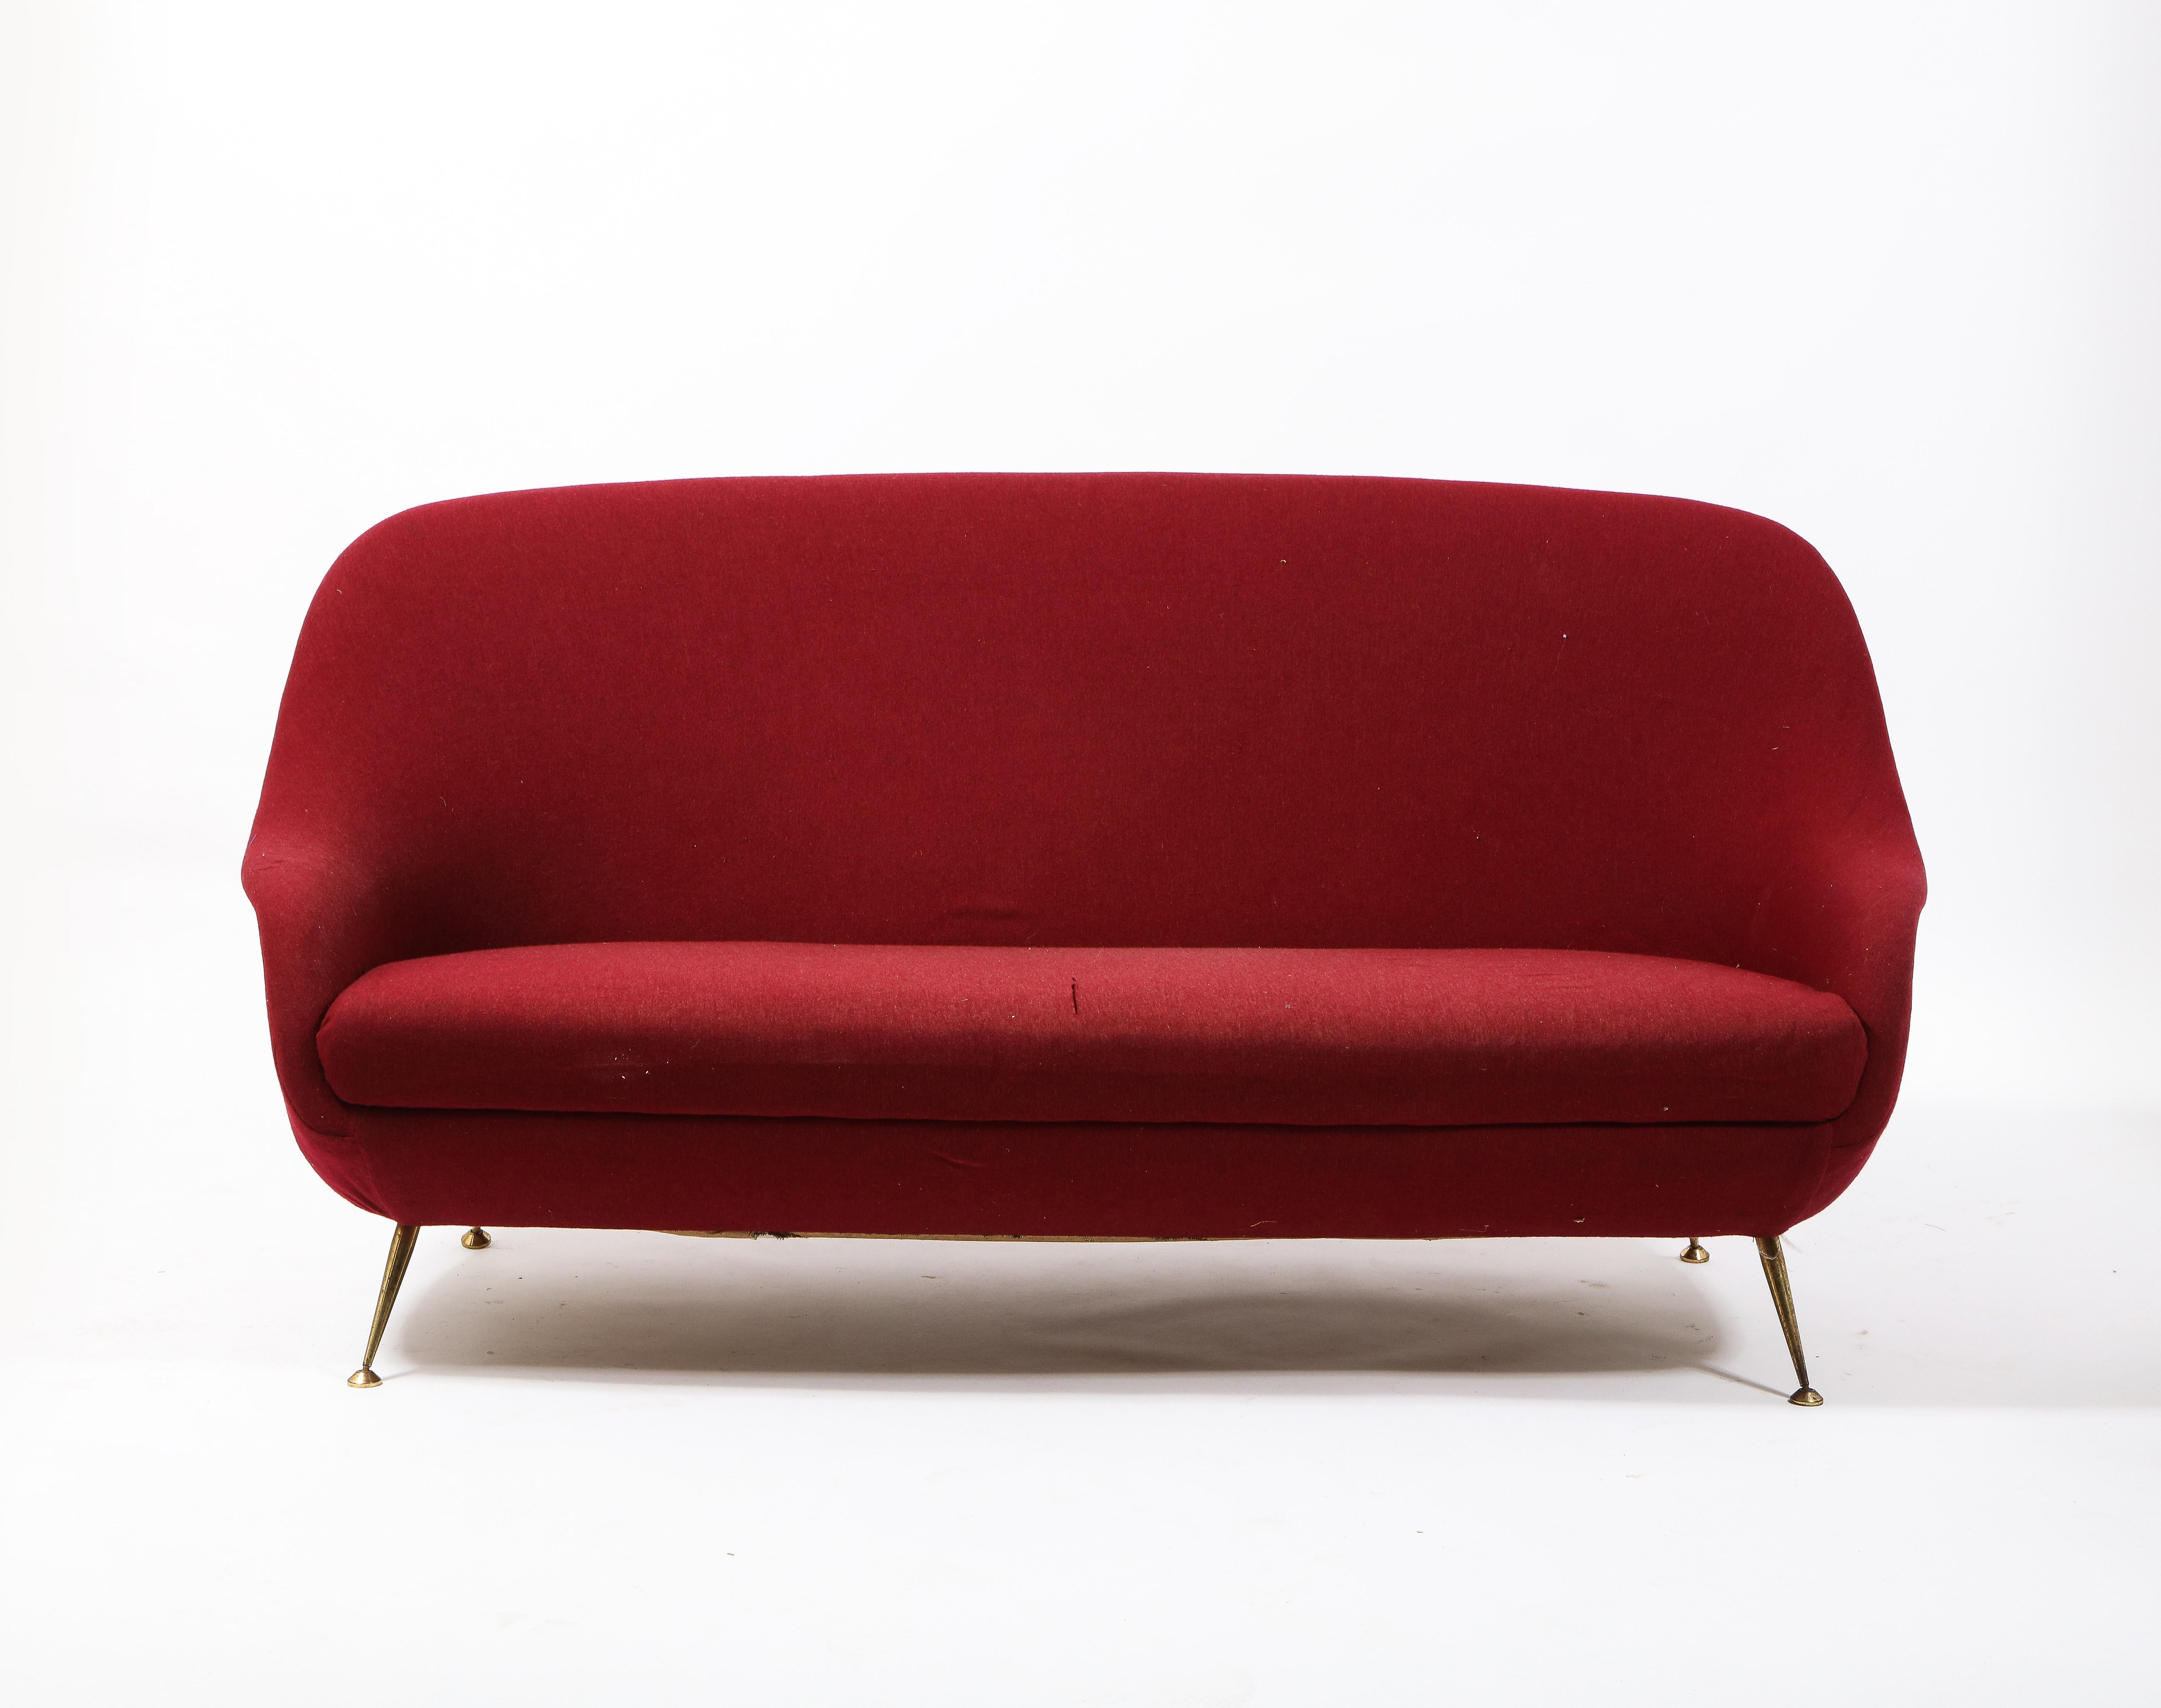 Elegant burgundy sofa on brass legs. Sofa will need full upholstery.